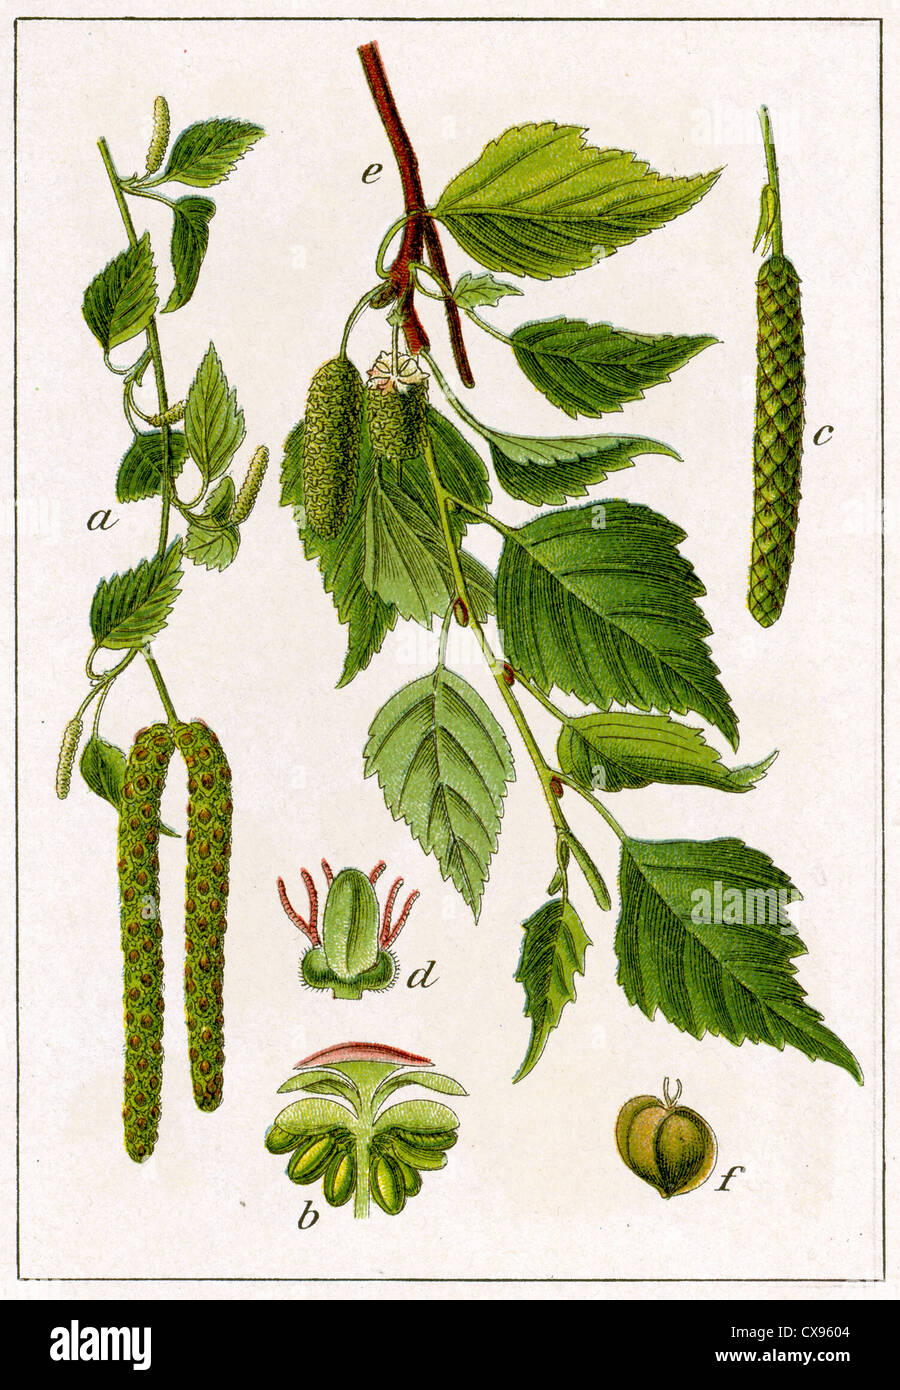 Silver Birch (Betula pendula, Betula verrucosa), Heilpflanze, Pflanze,  chromolithography, ca. 1870 Stockfotografie - Alamy